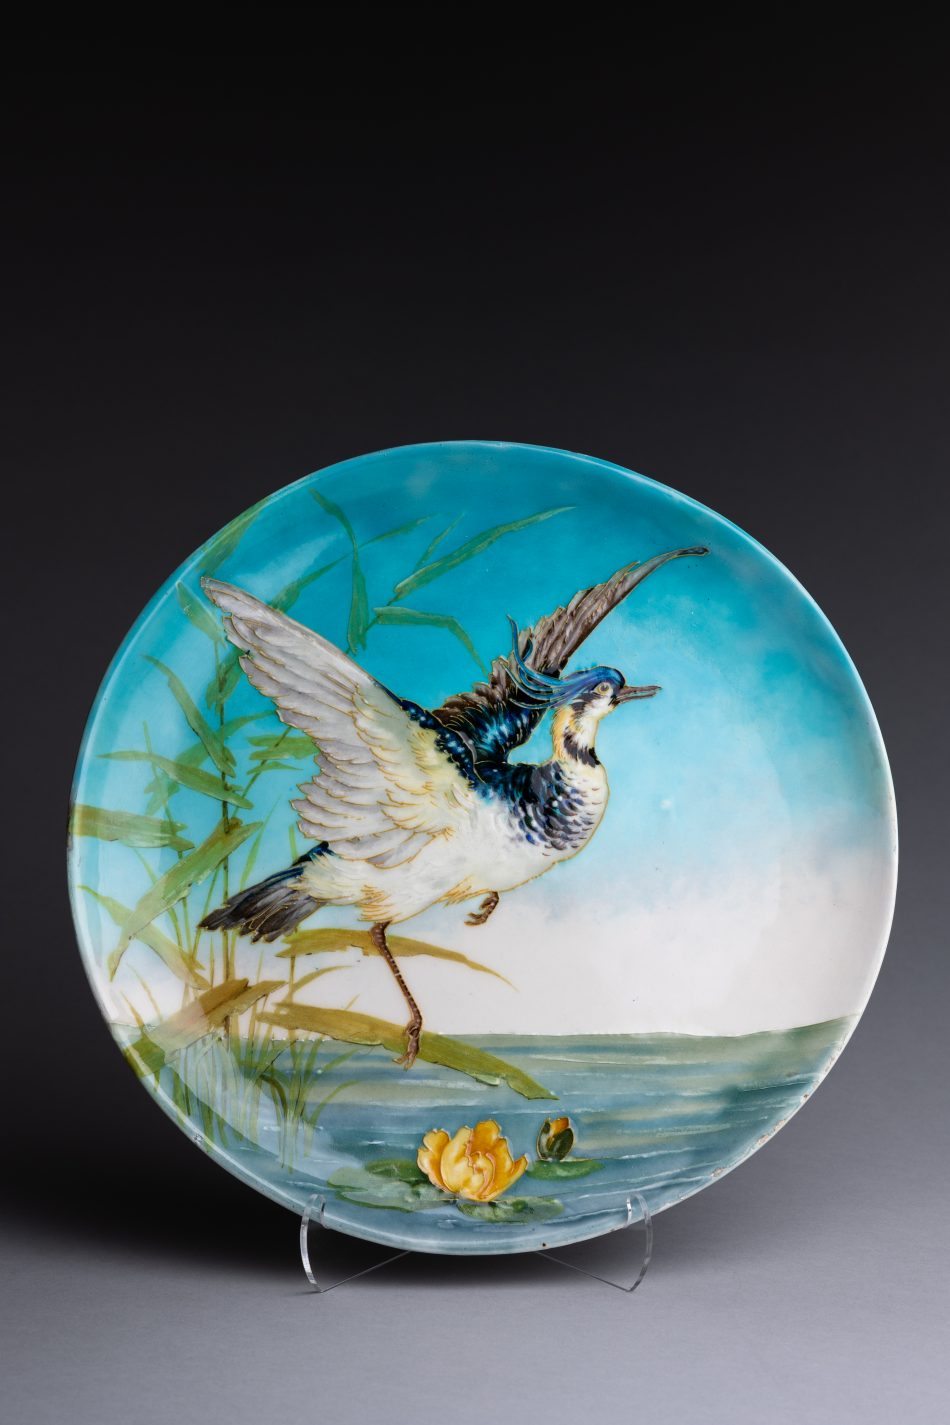 Paul Milet Sevres Porcelain Plate